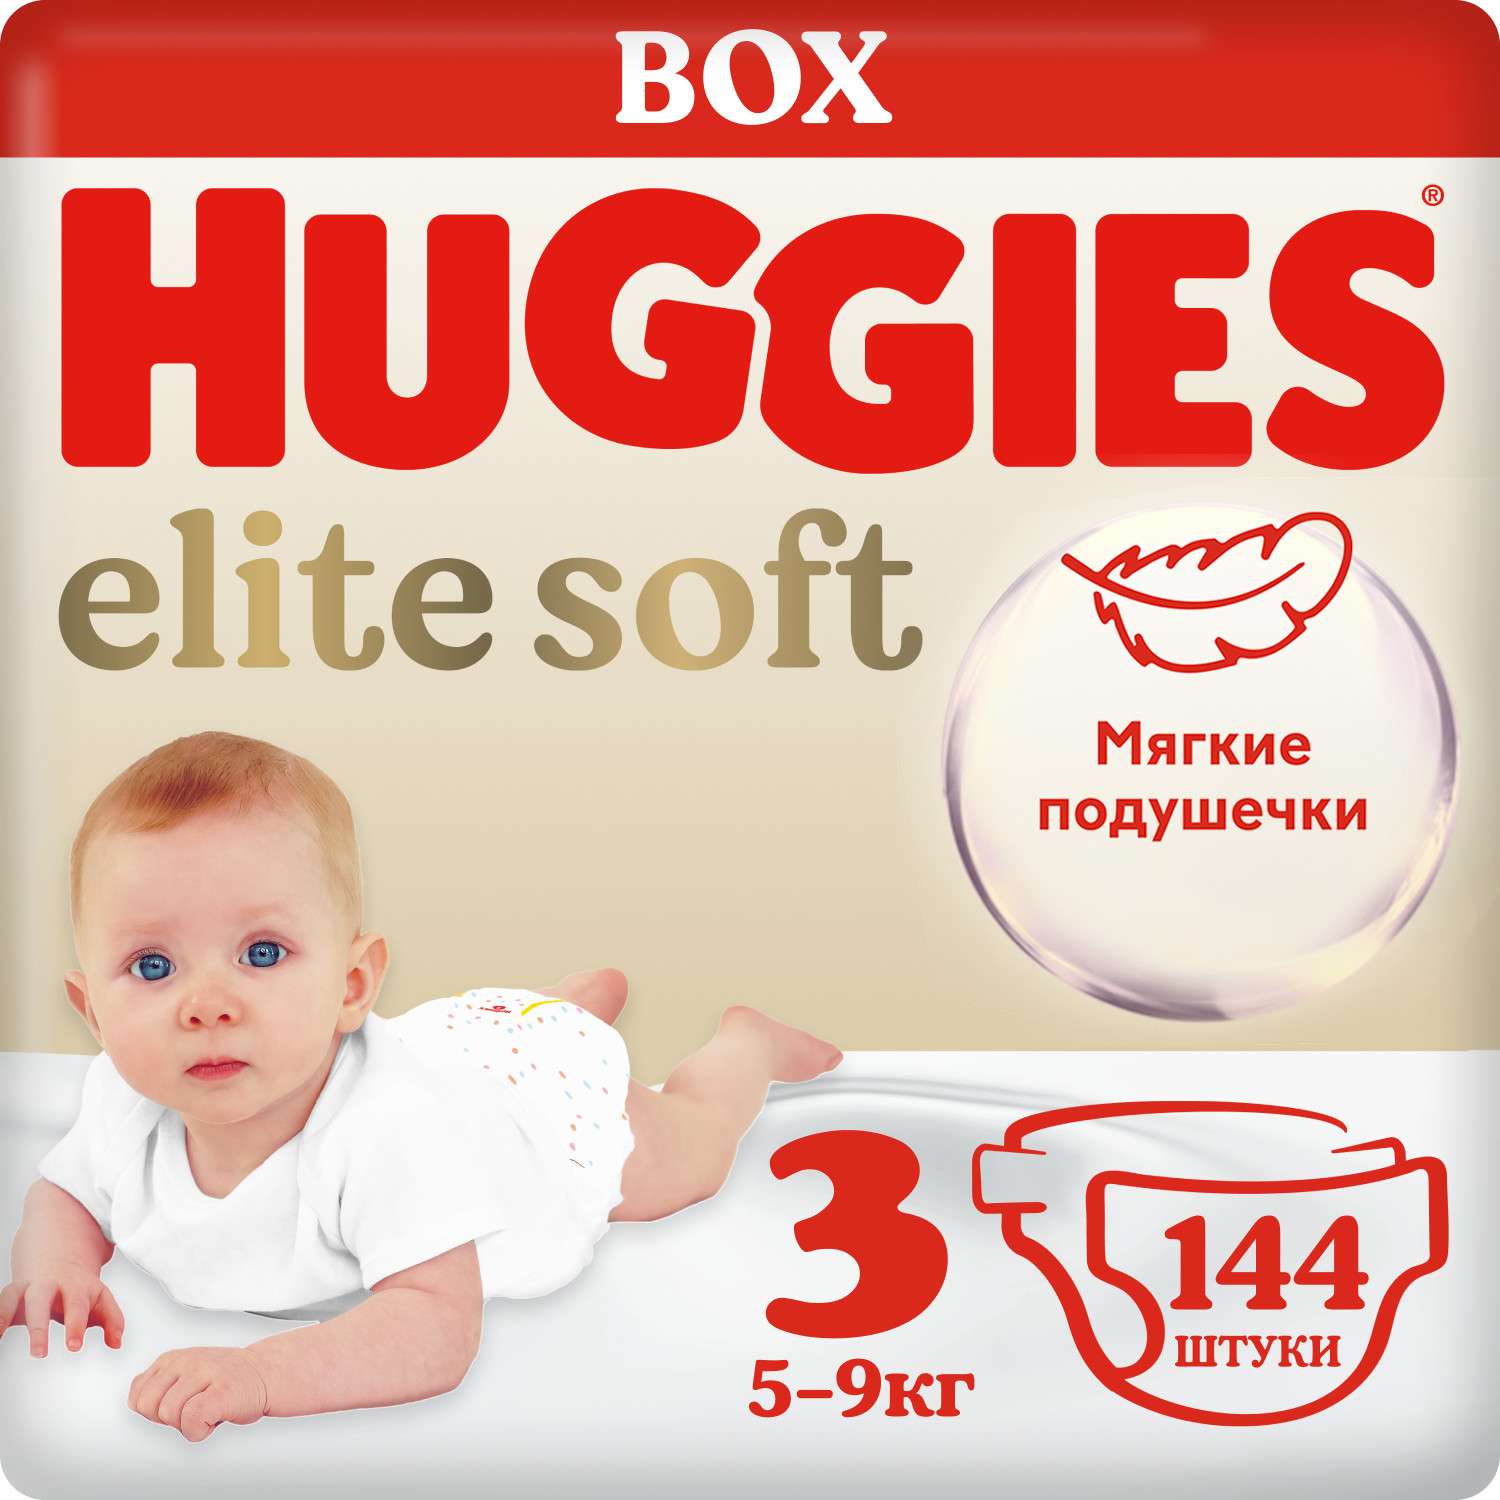 Подгузники Huggies Elite Soft 3 5-9кг 144шт - фото 1